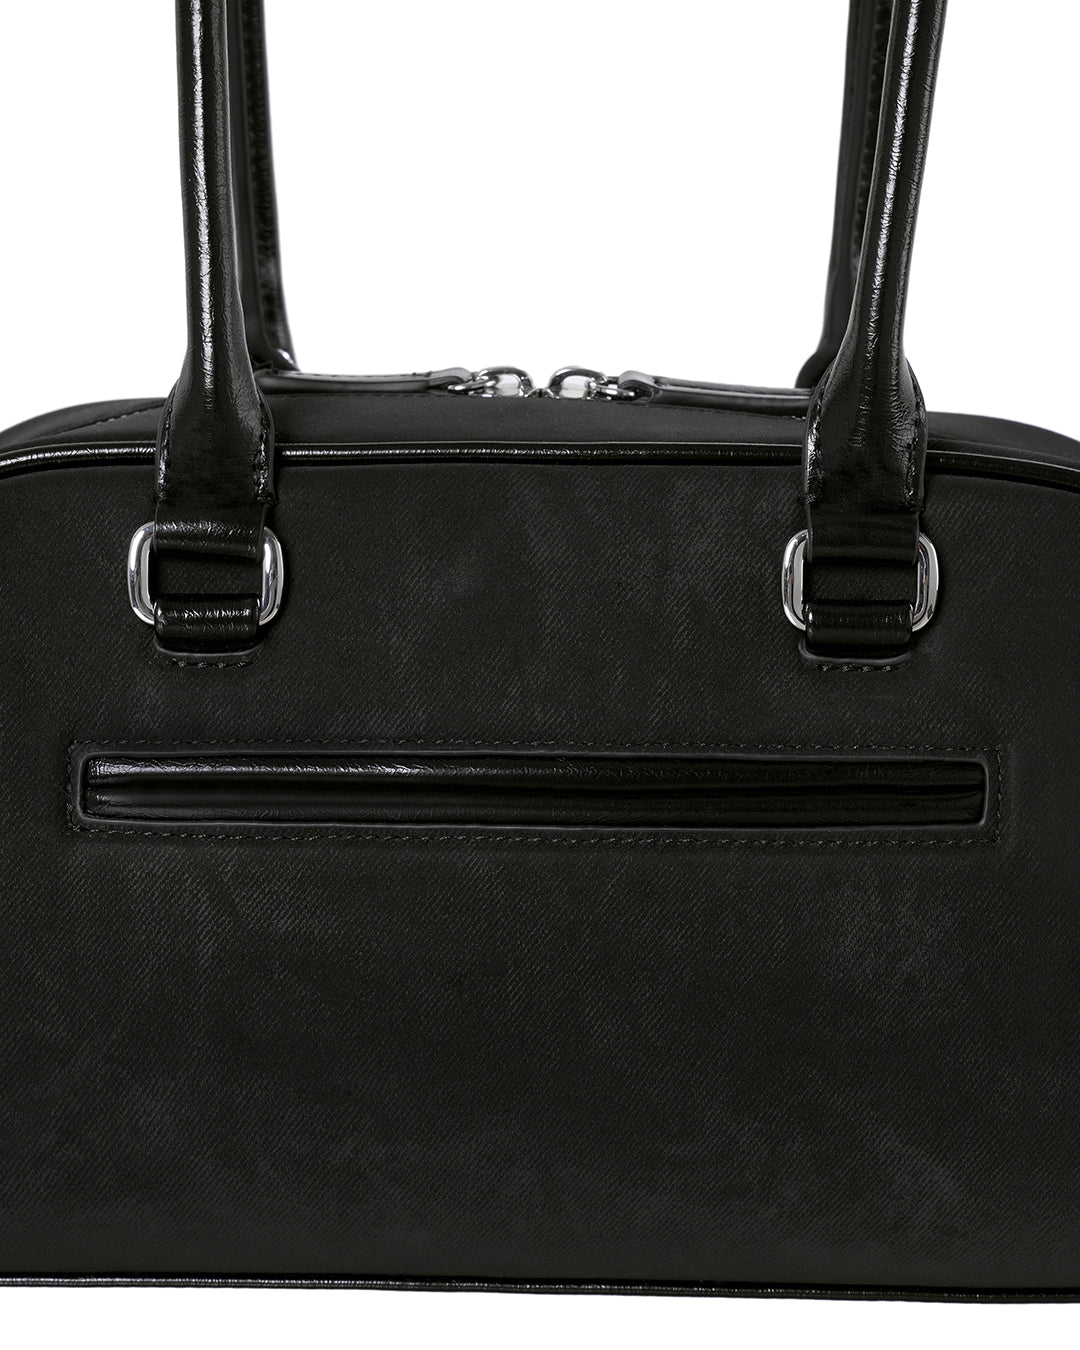 Túi Xách Standoil Chubby Bag #Black Combination